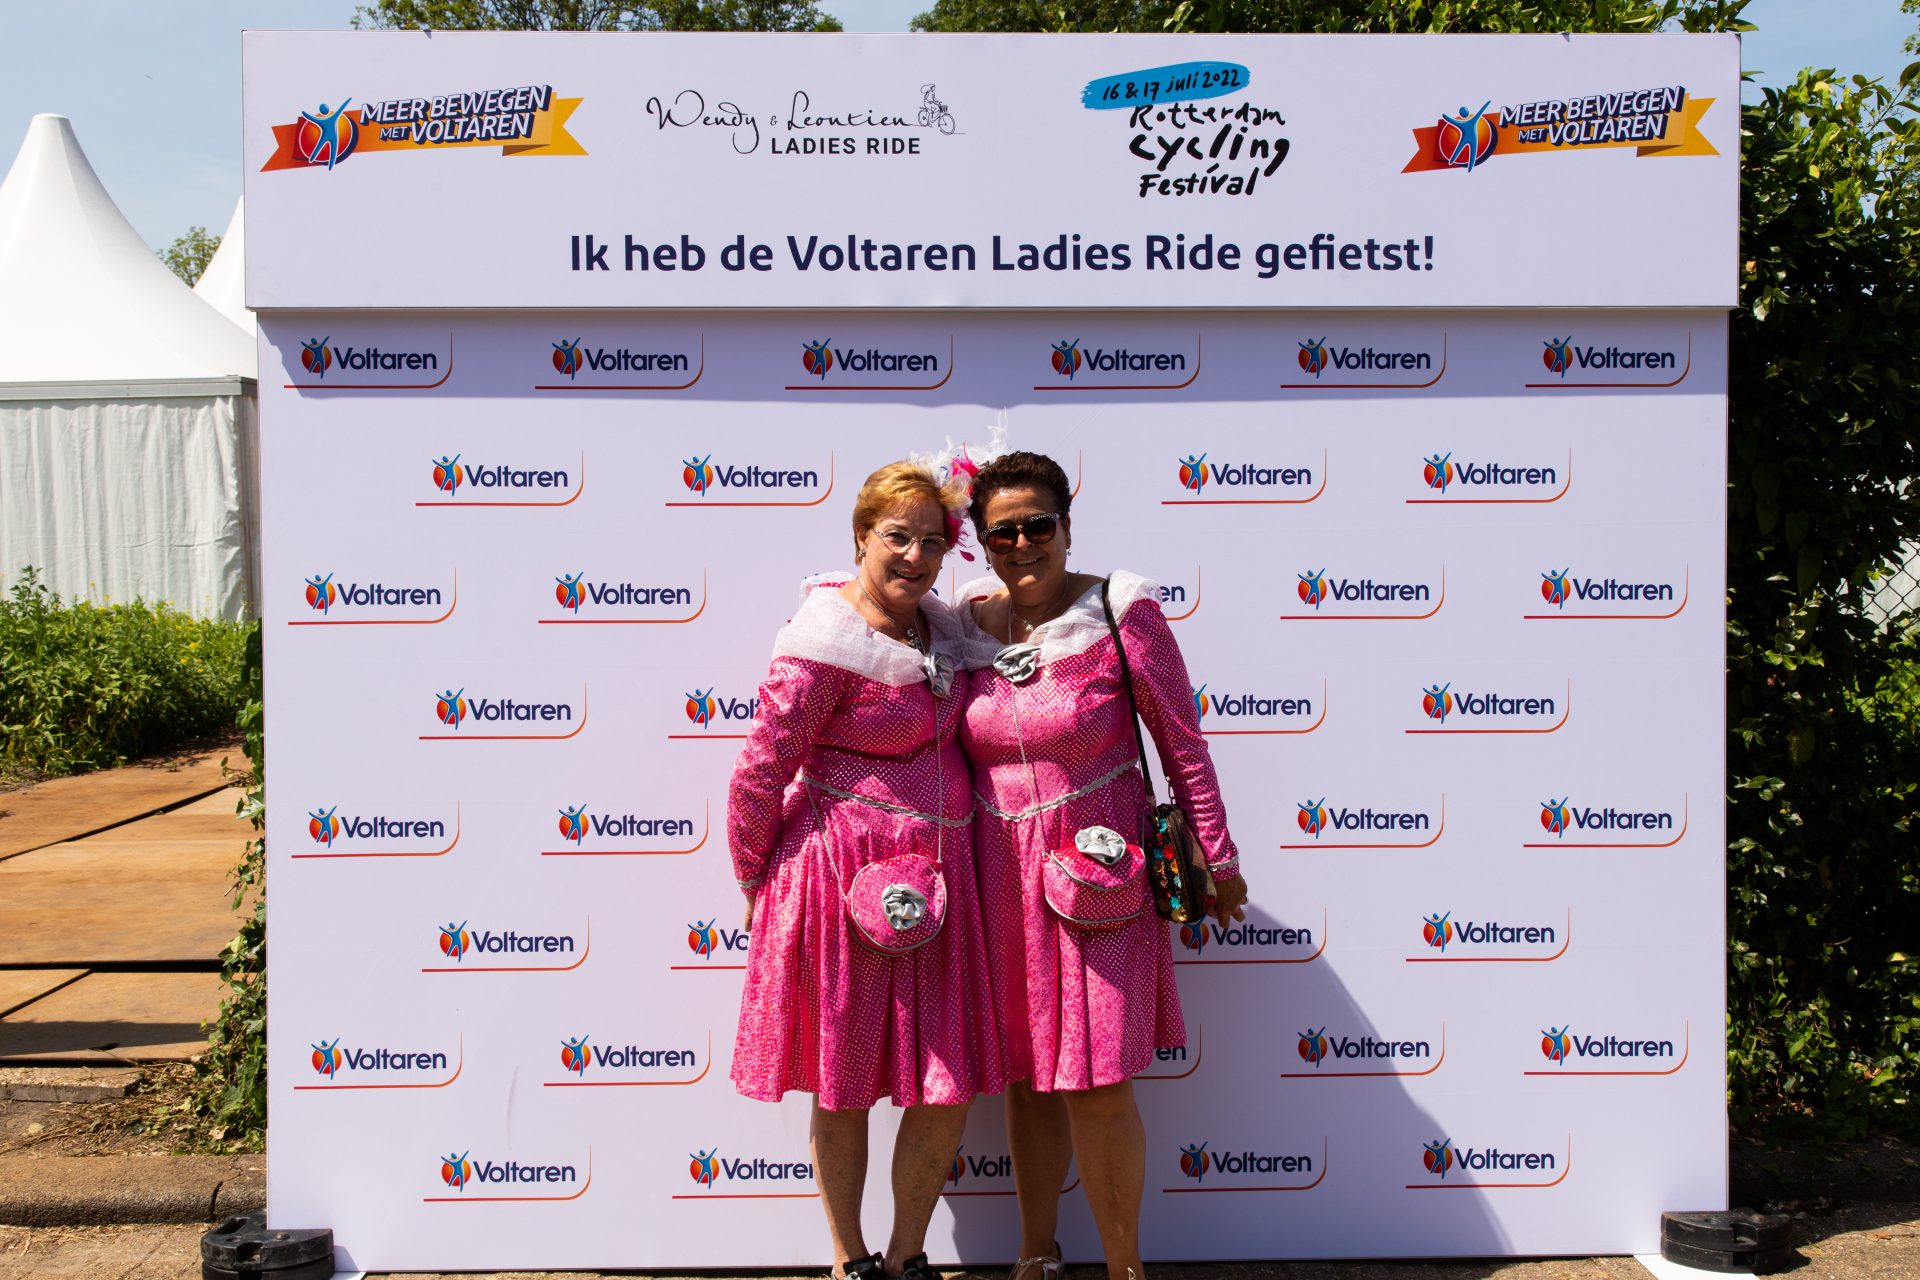 LADIES RIDE VOLTAREN BACKGROUND PHOTOS 64 of 64 Ladies Ride 2022